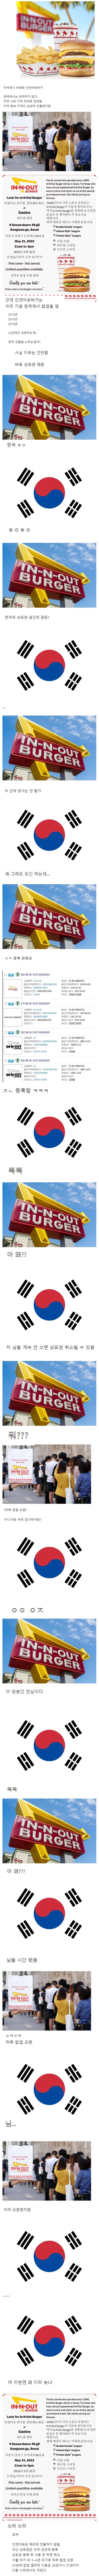 [스압] 인앤아웃 버거가 가끔 한국에 팝업스토어를 여는 이유